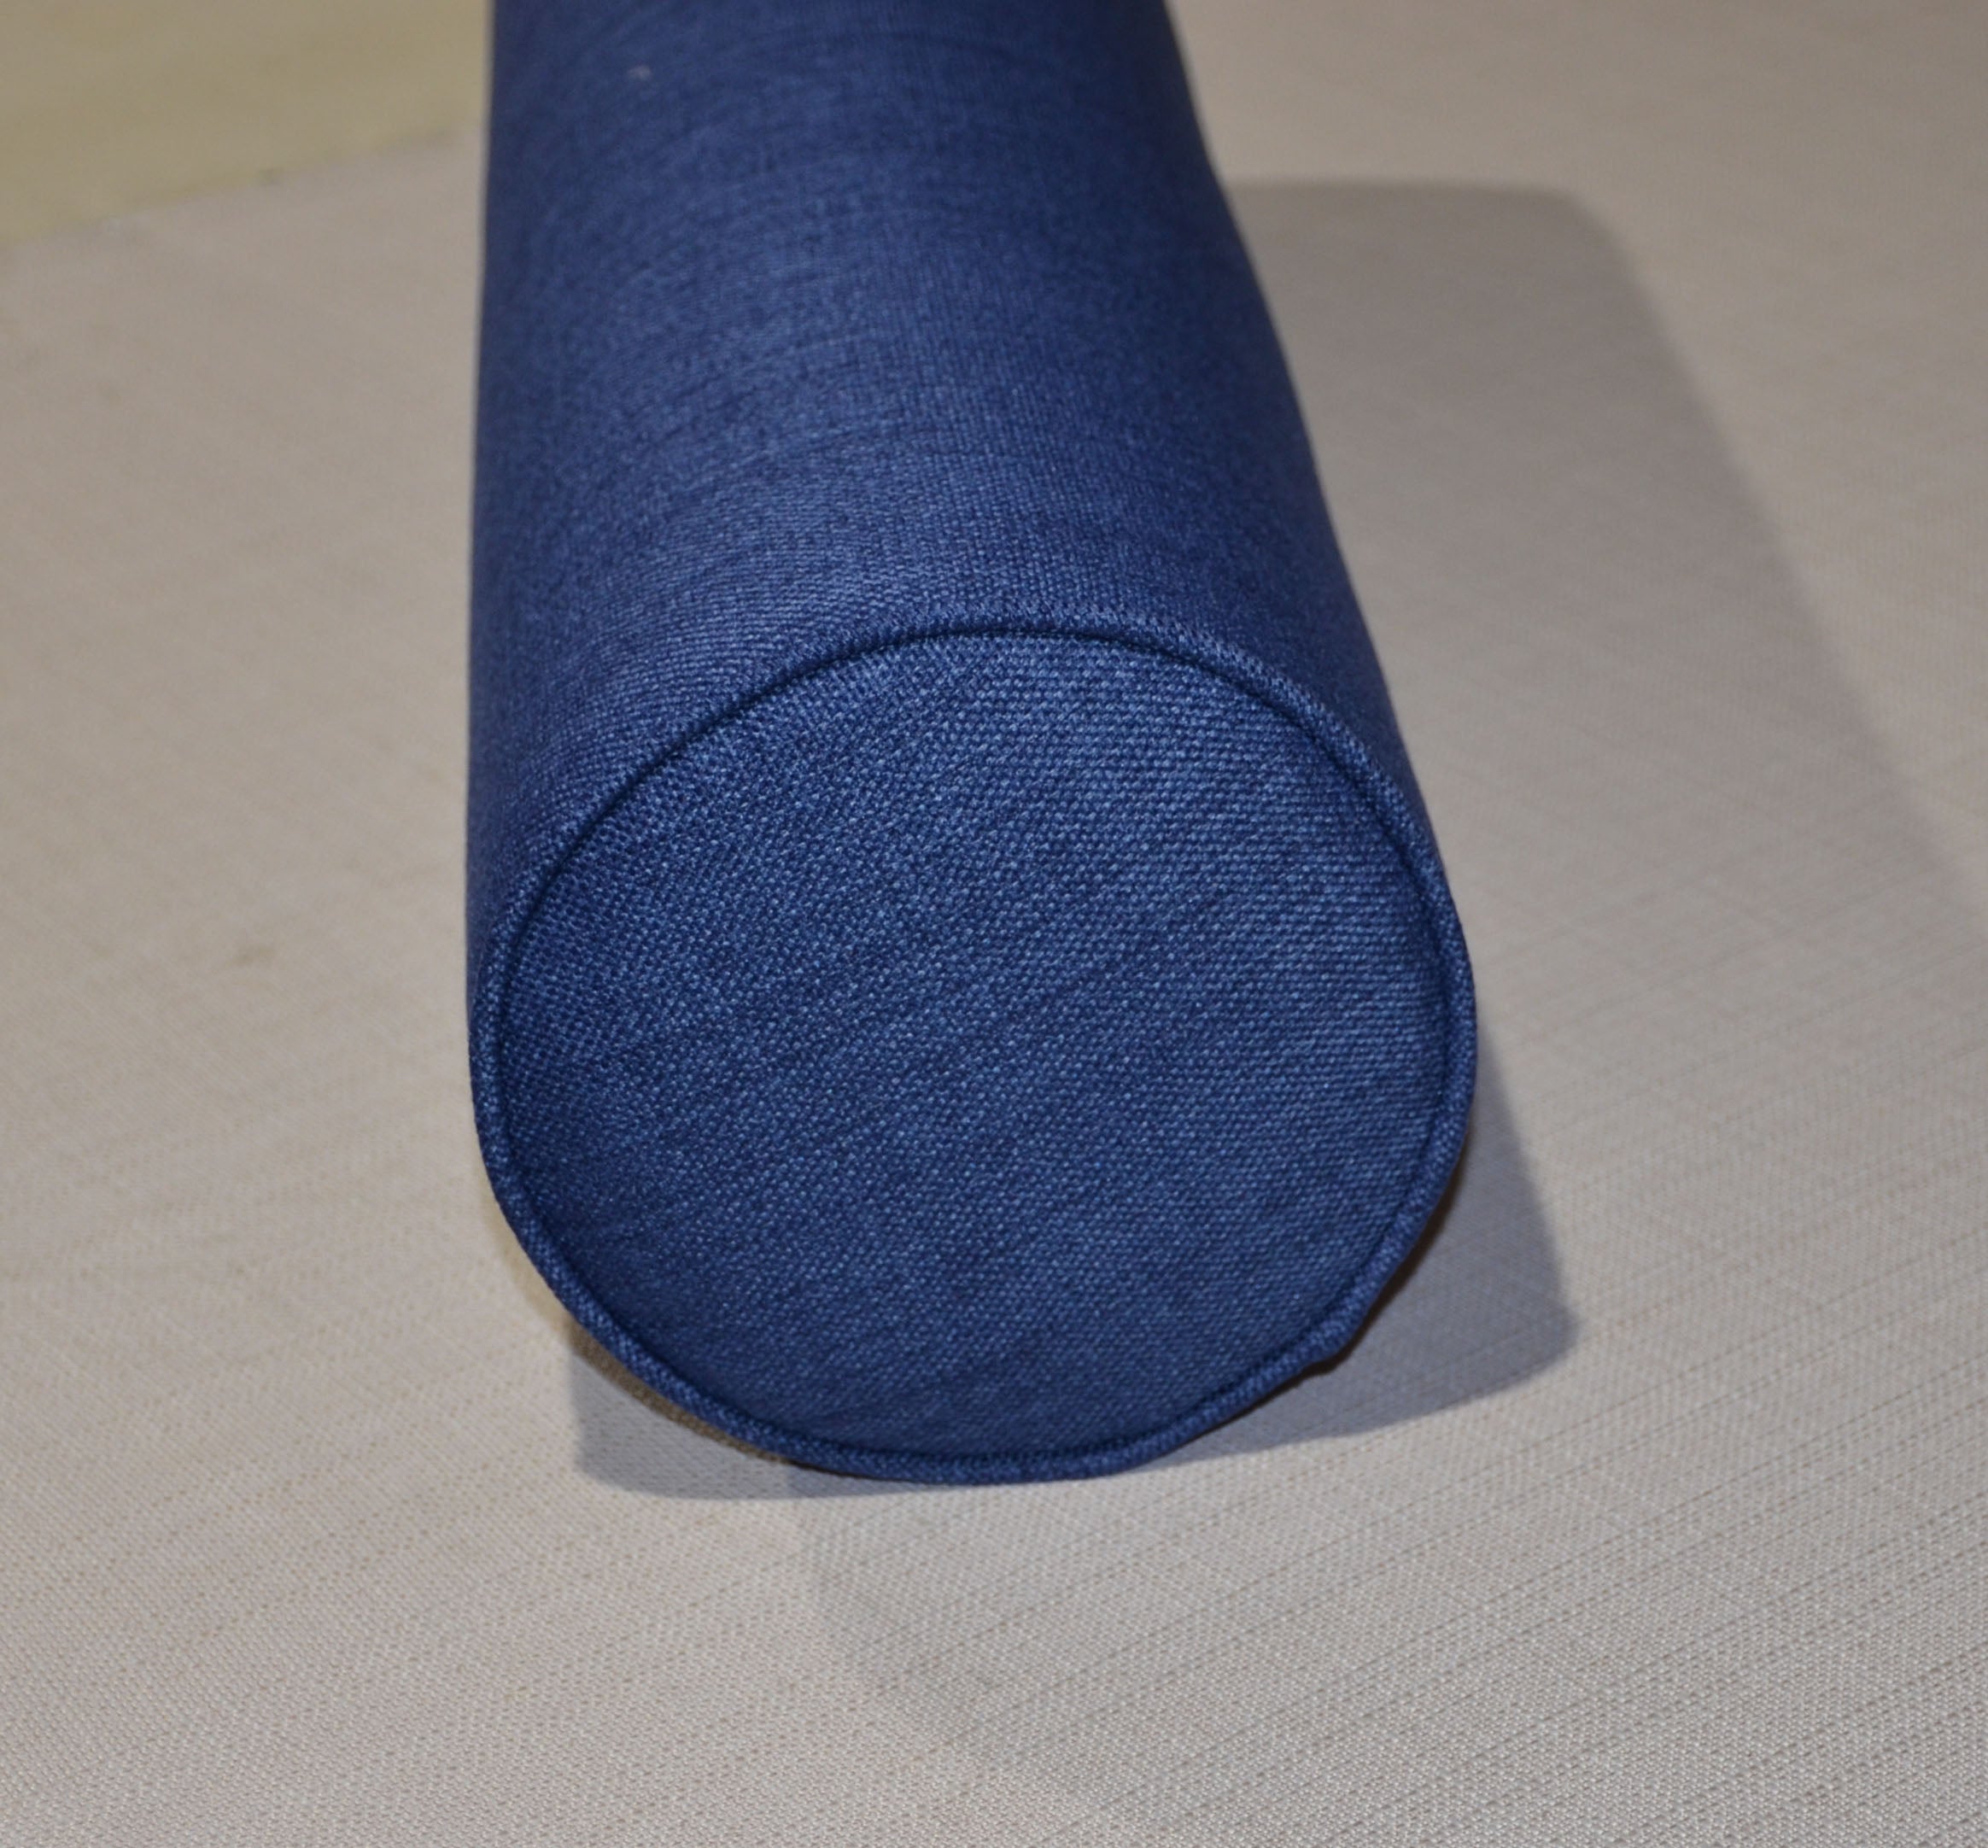 Round Bolster Pillow Cover . Lepap Navy Blue.